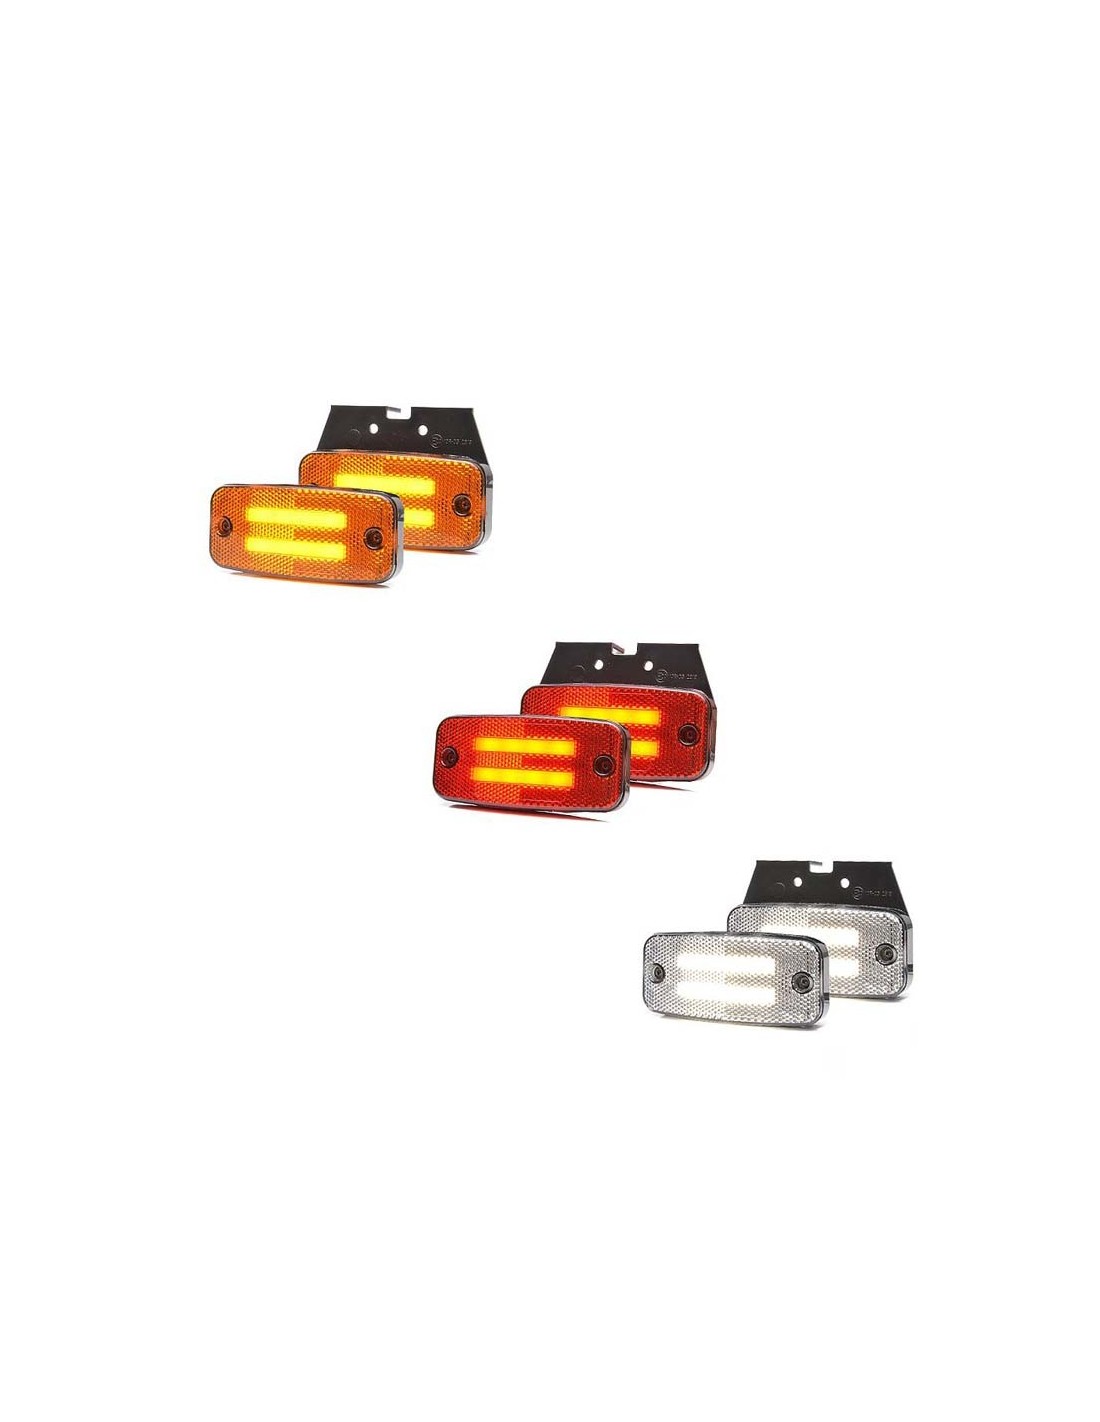 Feux de gabarit LED 12-24V pour camions camionnette remorque etc